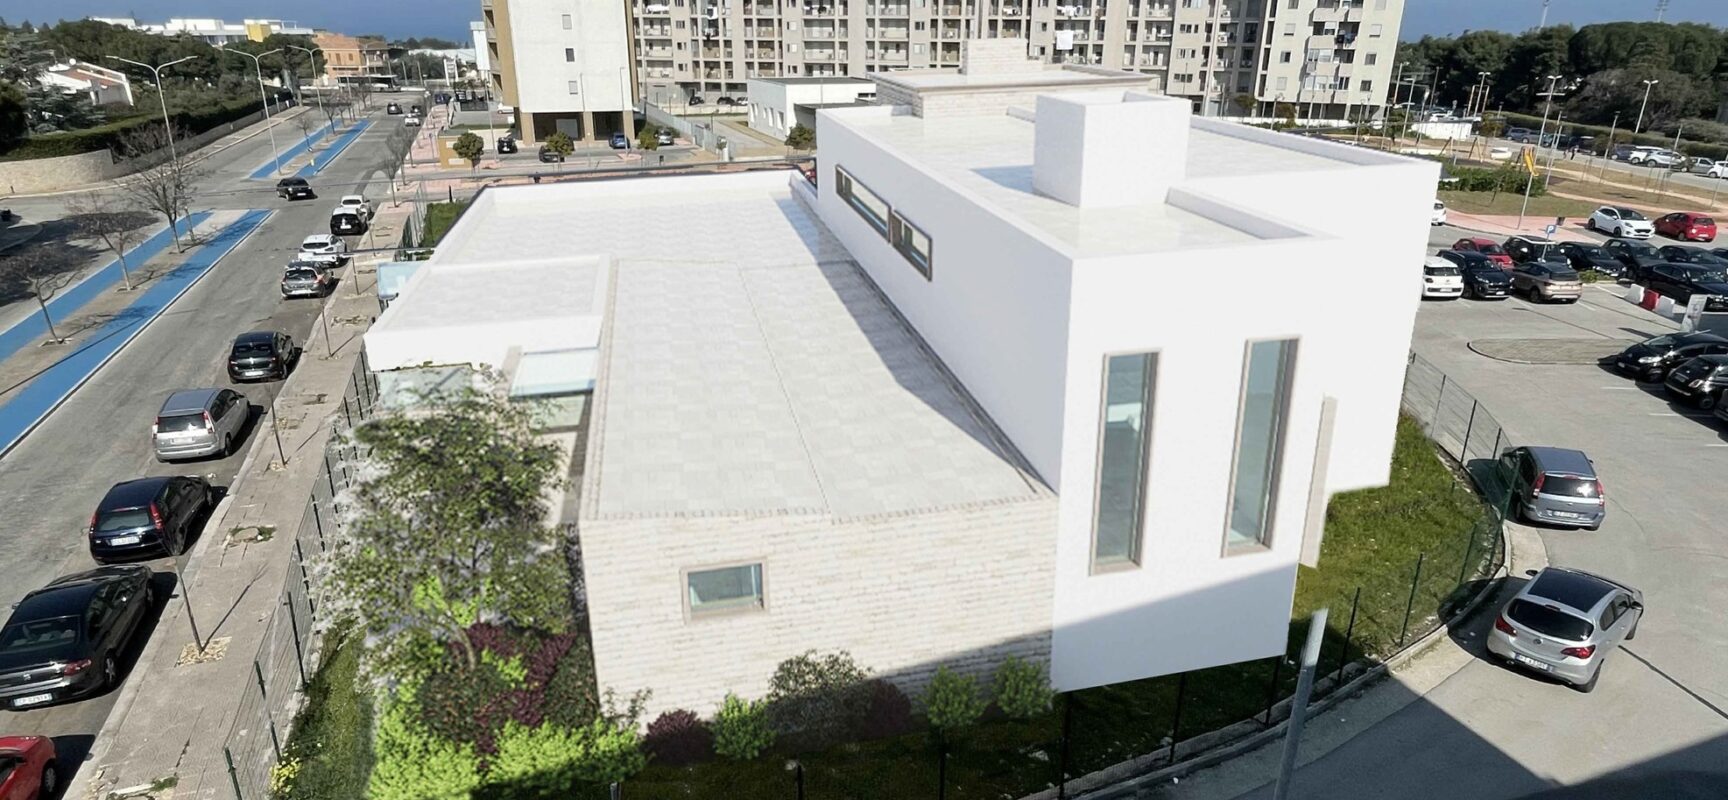 Angarano: “In Consiglio approvato la variante per realizzazione Casa della Comunità”